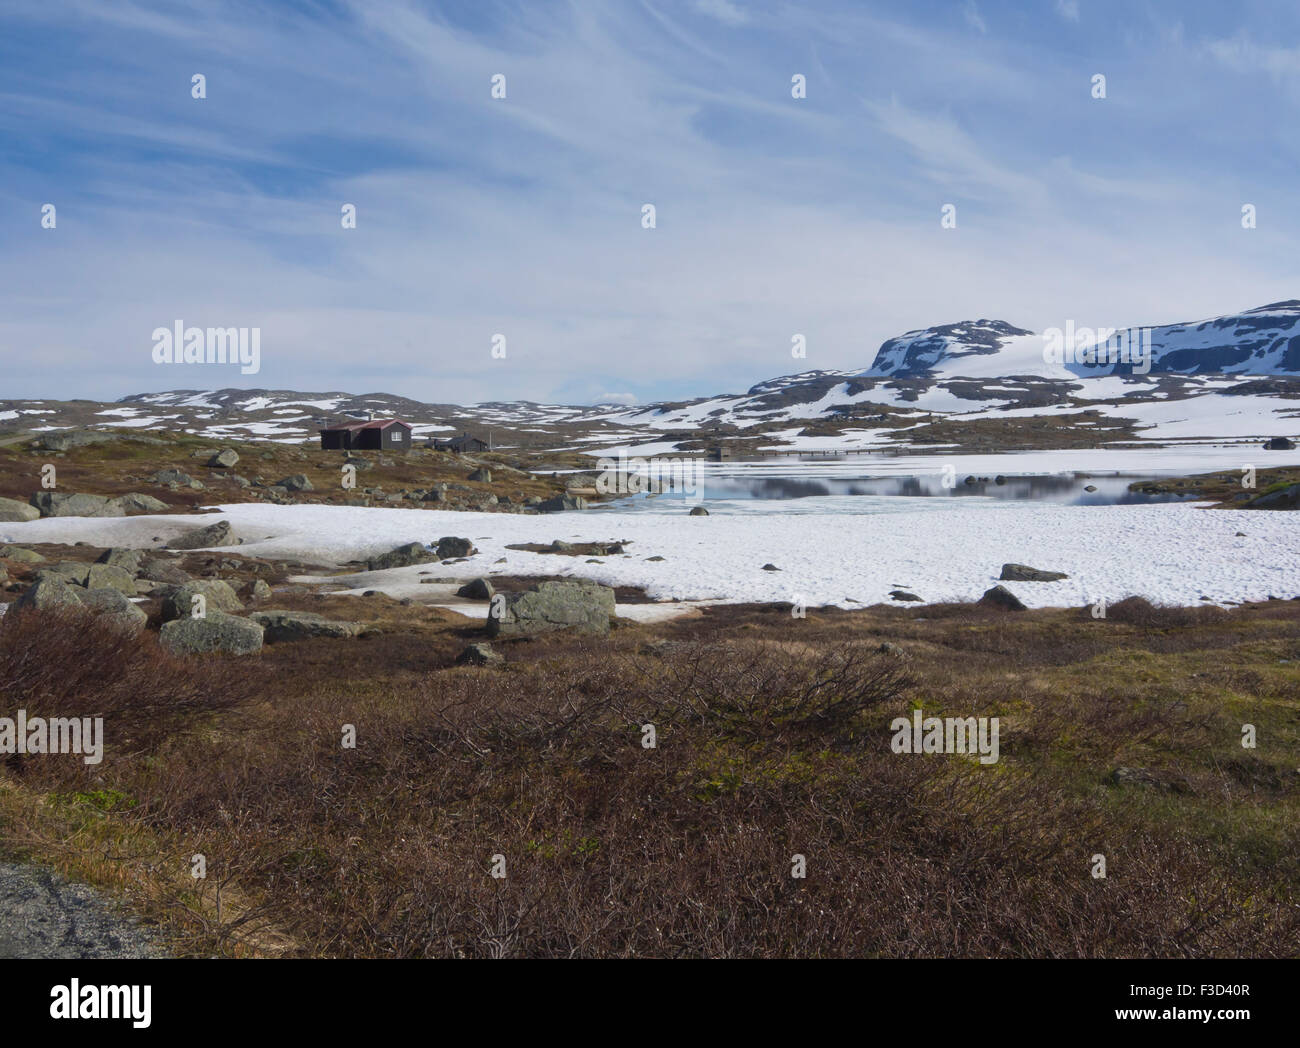 Vista panorámica de las montañas noruegas, cabaña, Lago, parches de nieve y glaciares lejanos, Hardangervidda Finse, Noruega Foto de stock